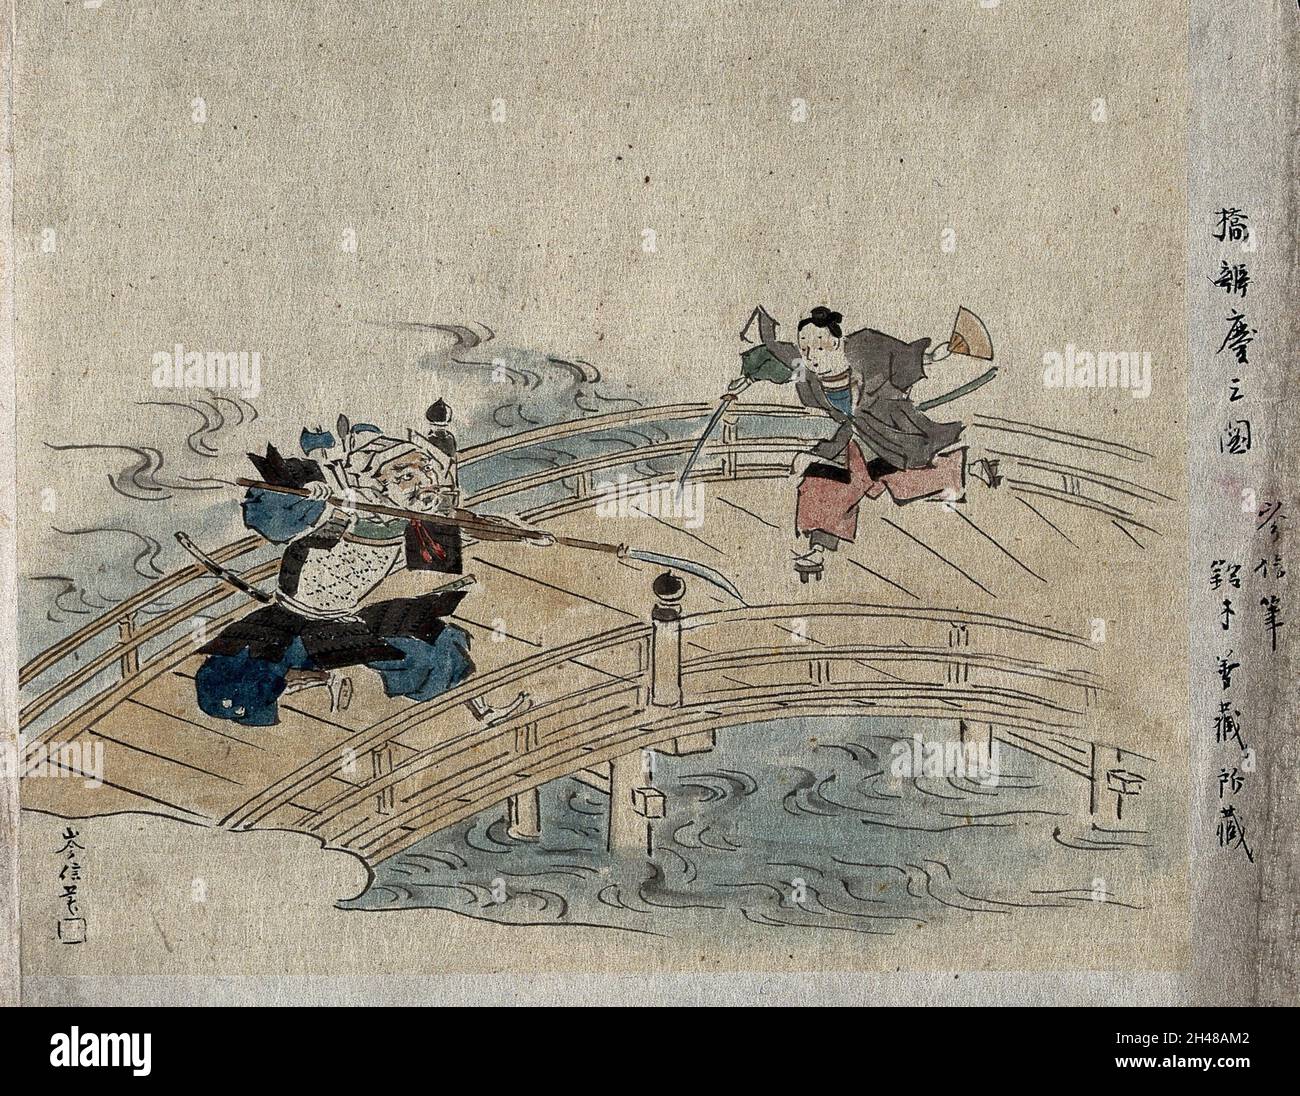 Un samouraï féroce tenant une lance luttant contre un samouraï efféminé sur un pont.Aquarelle, 18--. Banque D'Images